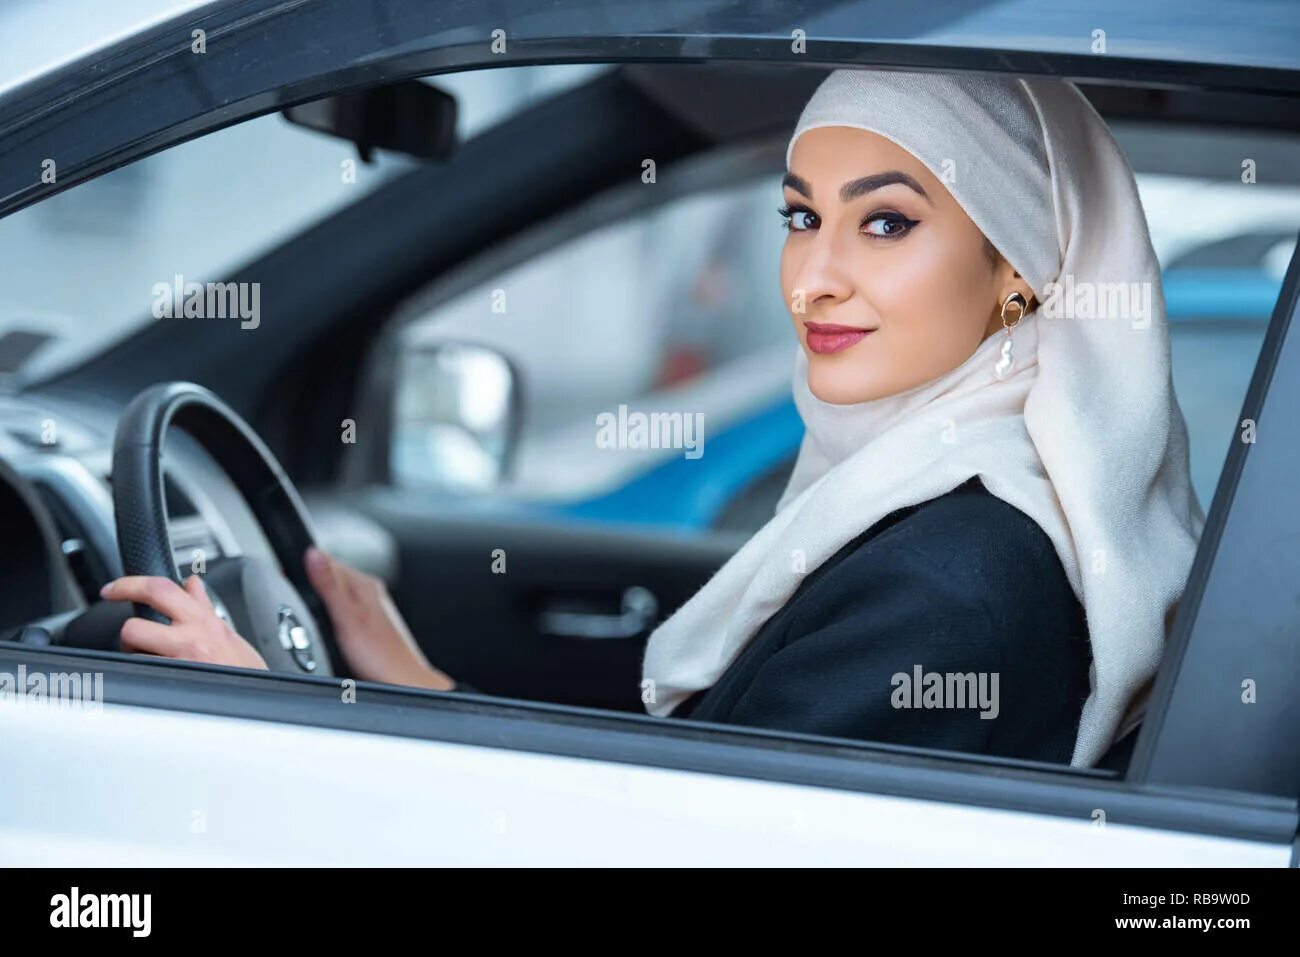 Мусульманка за рулем. Мусульманка водит машину. Девушка мусульманка за рулем. Красивая мусульманка в машине.